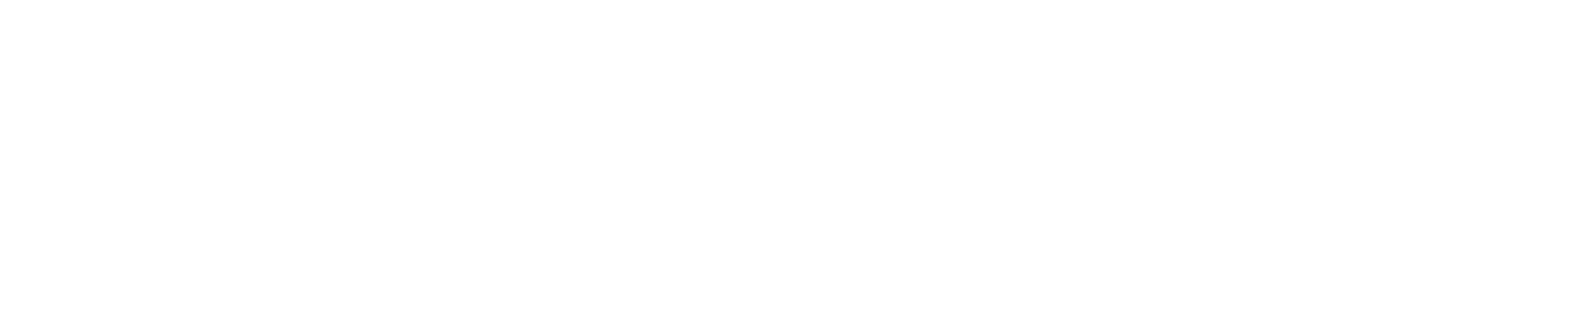 Julius Bär logo large for dark backgrounds (transparent PNG)